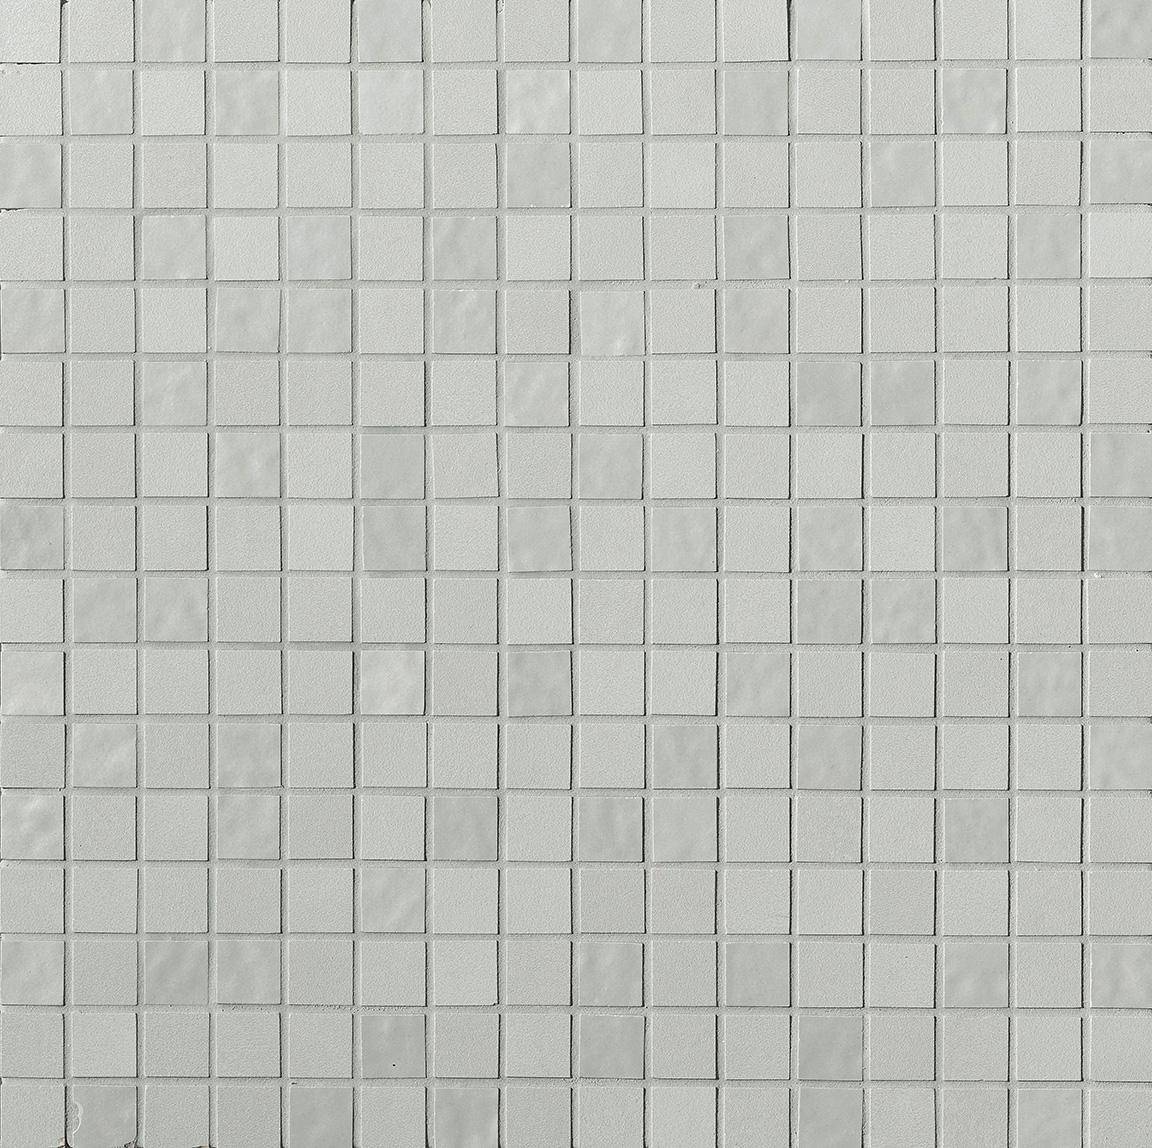 Faianta fap milano mood acquamarina mosaico 30,5×30,5 stuc